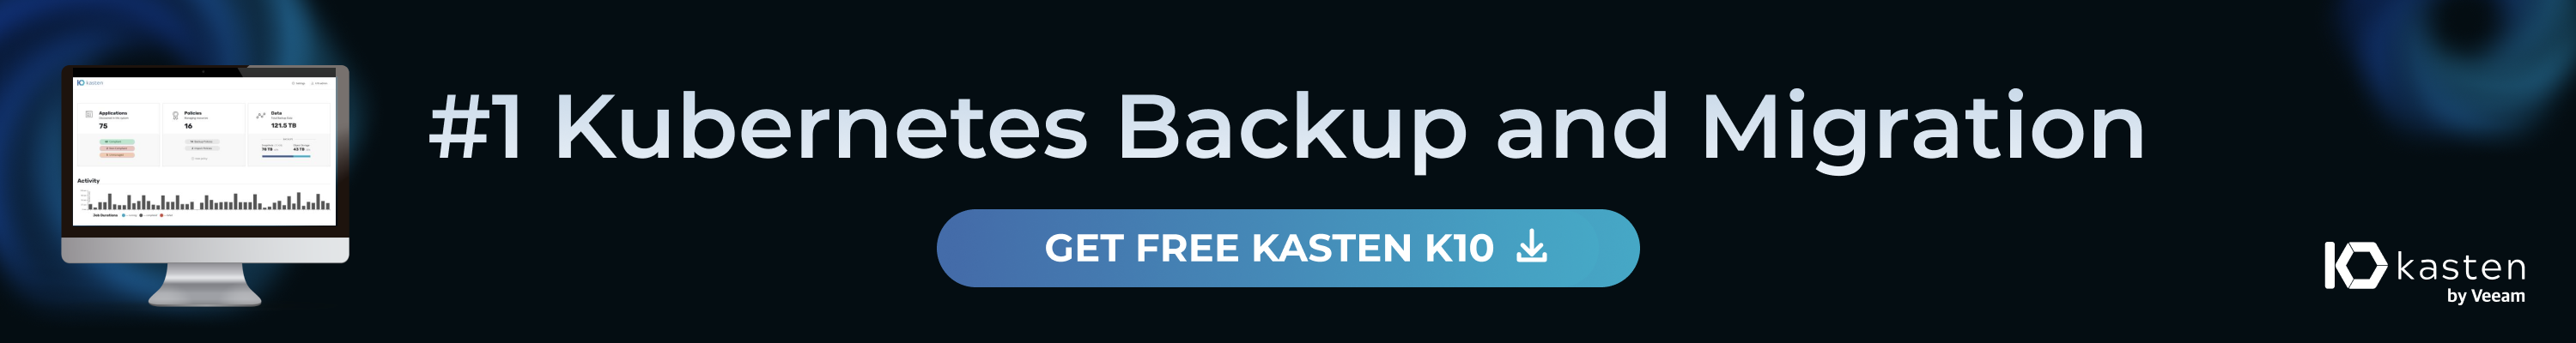 Get_Free_Kasten_K10-3000-blueBTN